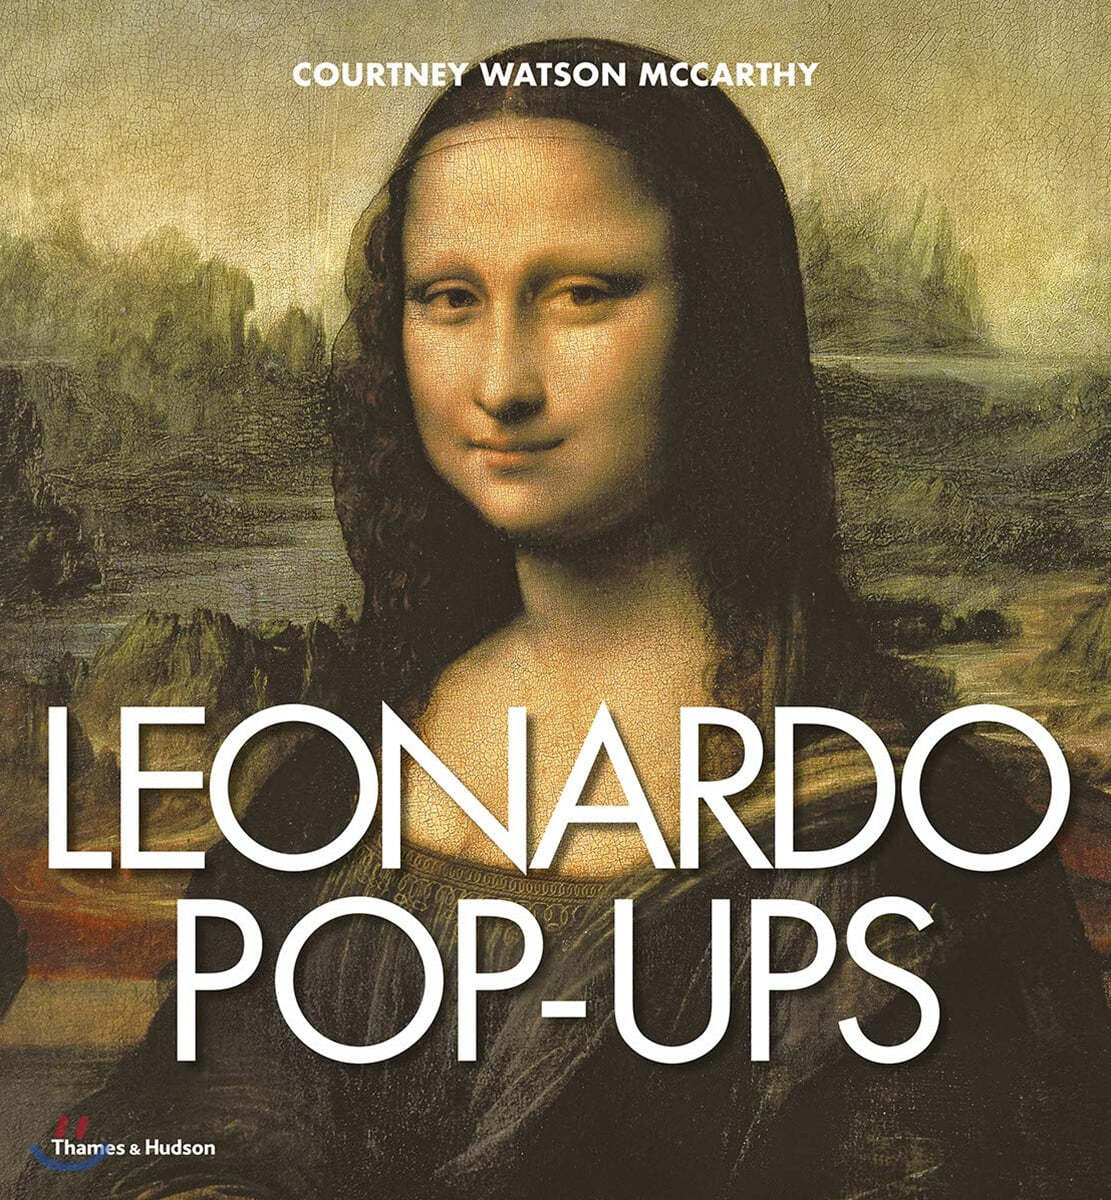 Leonardo Da Vinci Pop-ups (* 레오나르도 다빈치 팝업 북 *)